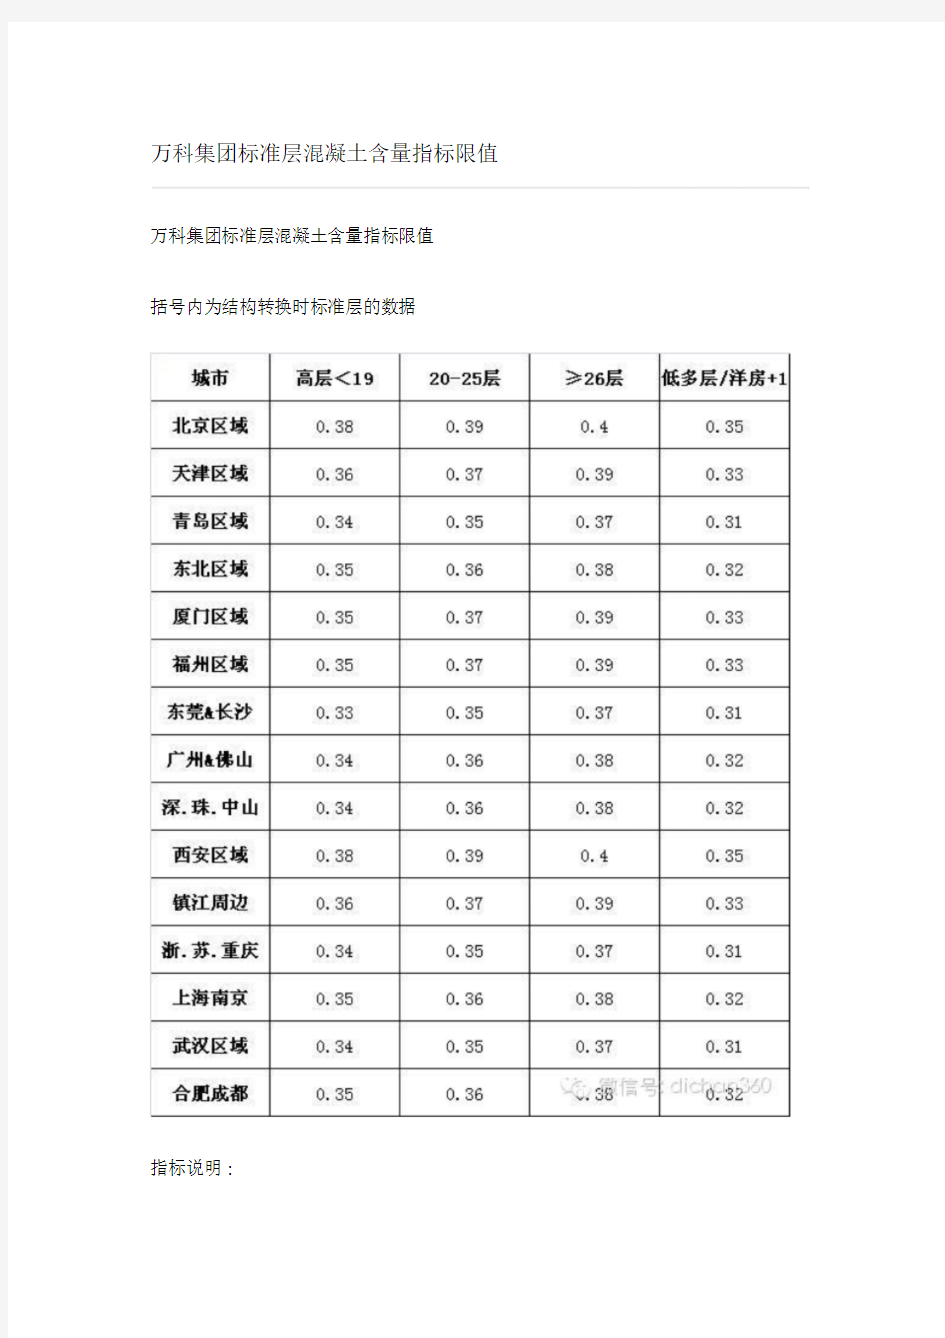 万科集团标准层混凝土含量指标限值(2)